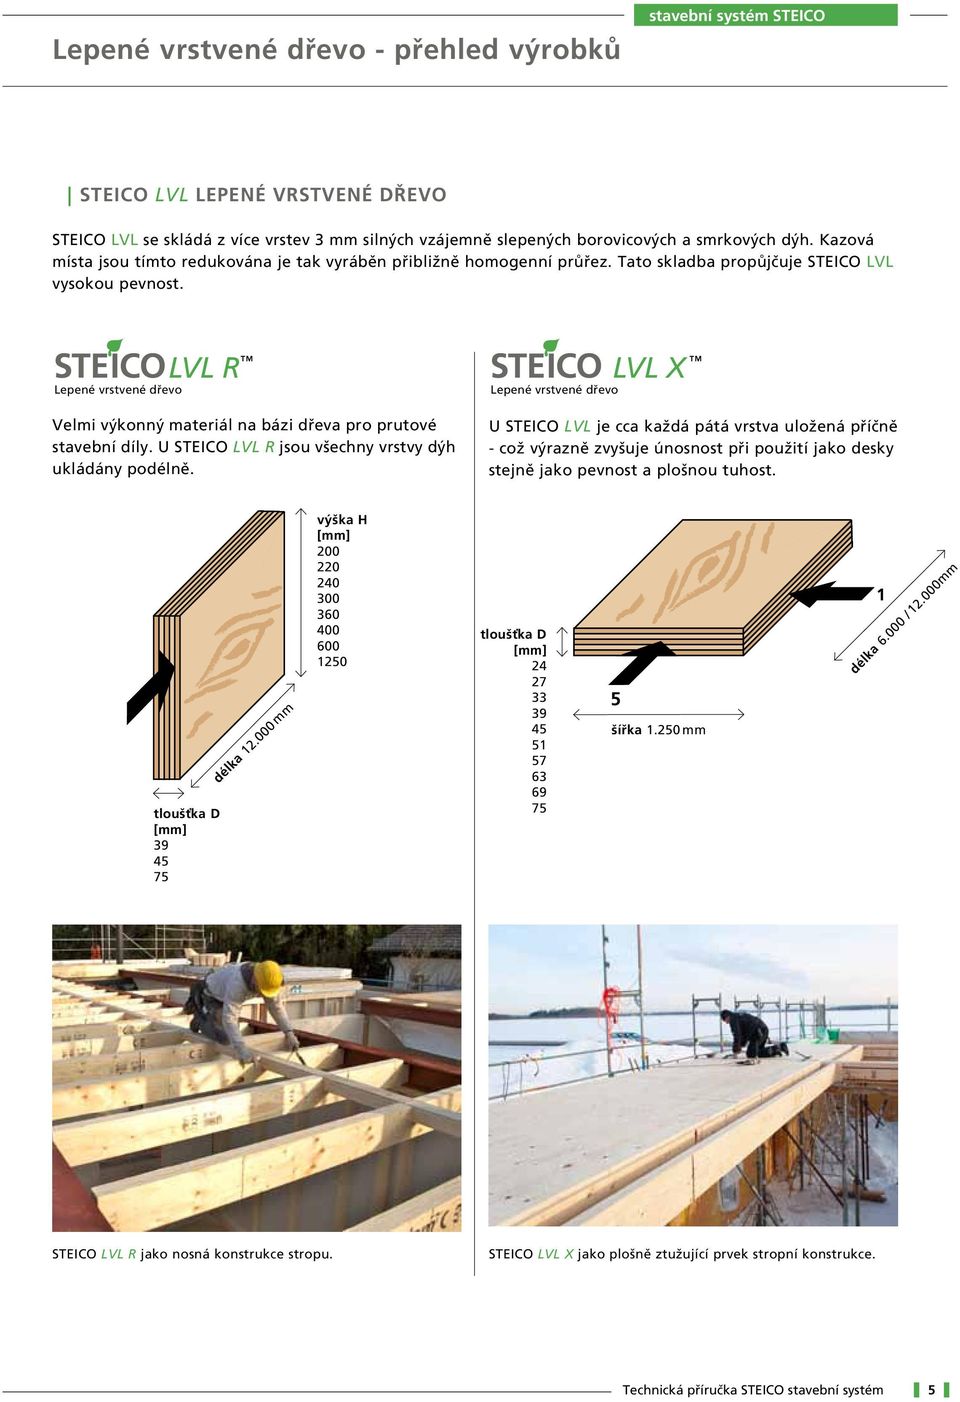 LVL R Lepené vrstvené dřevo Velmi výkonný materiál na bázi dřeva pro prutové stavební díly. U STEICO LVL R jsou všechny vrstvy dýh ukládány podélně.